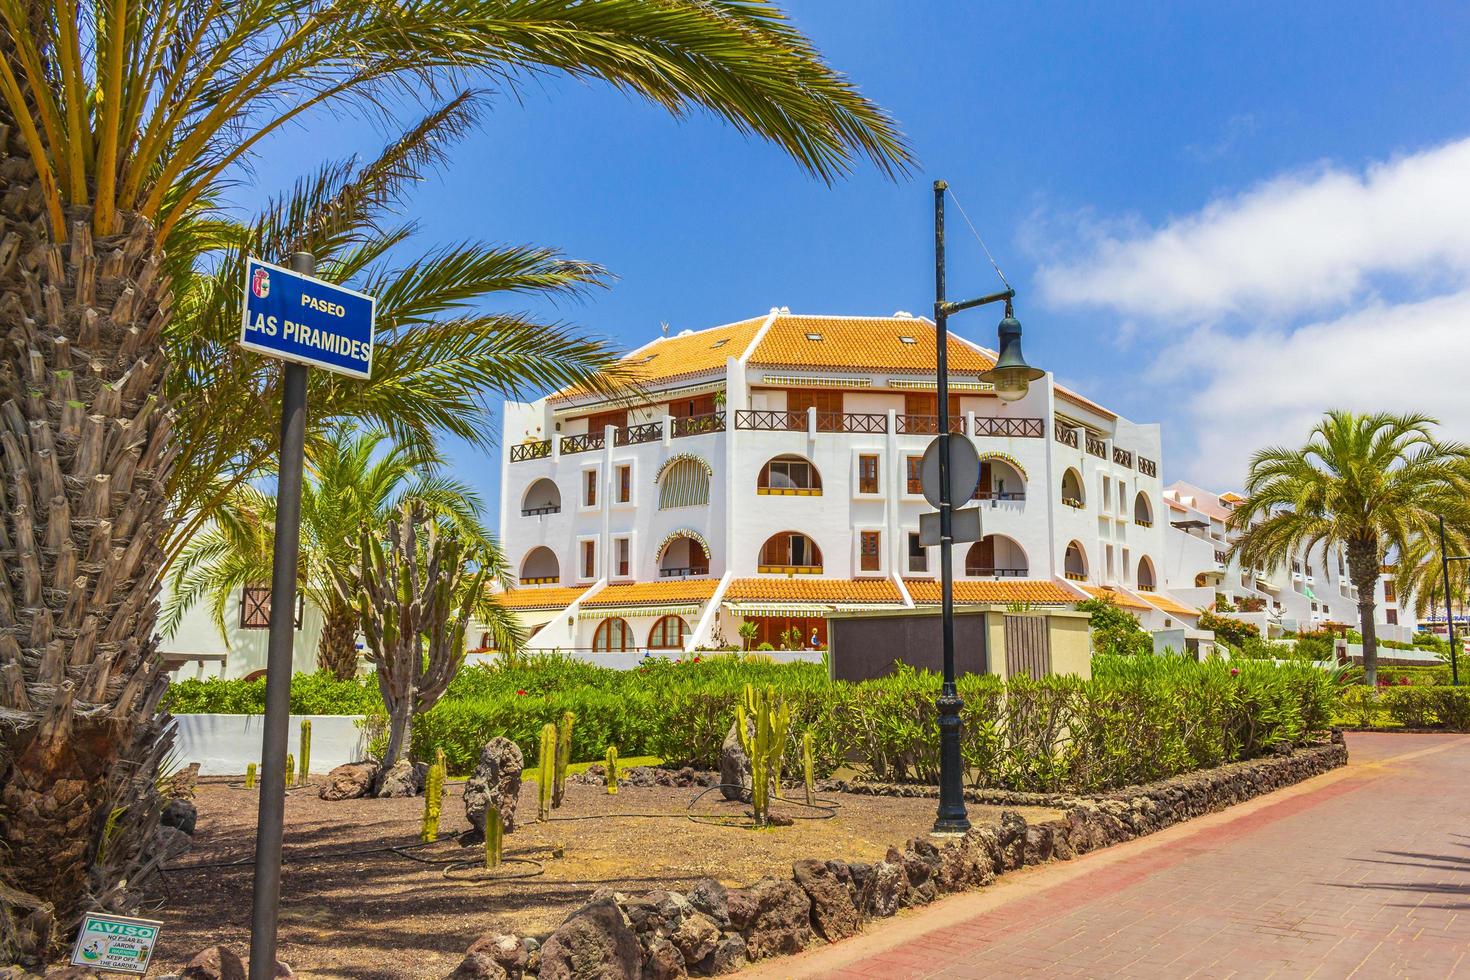 tenerife, spagna 2014- palme, palme da cocco e resort sull'isola spagnola delle Canarie foto